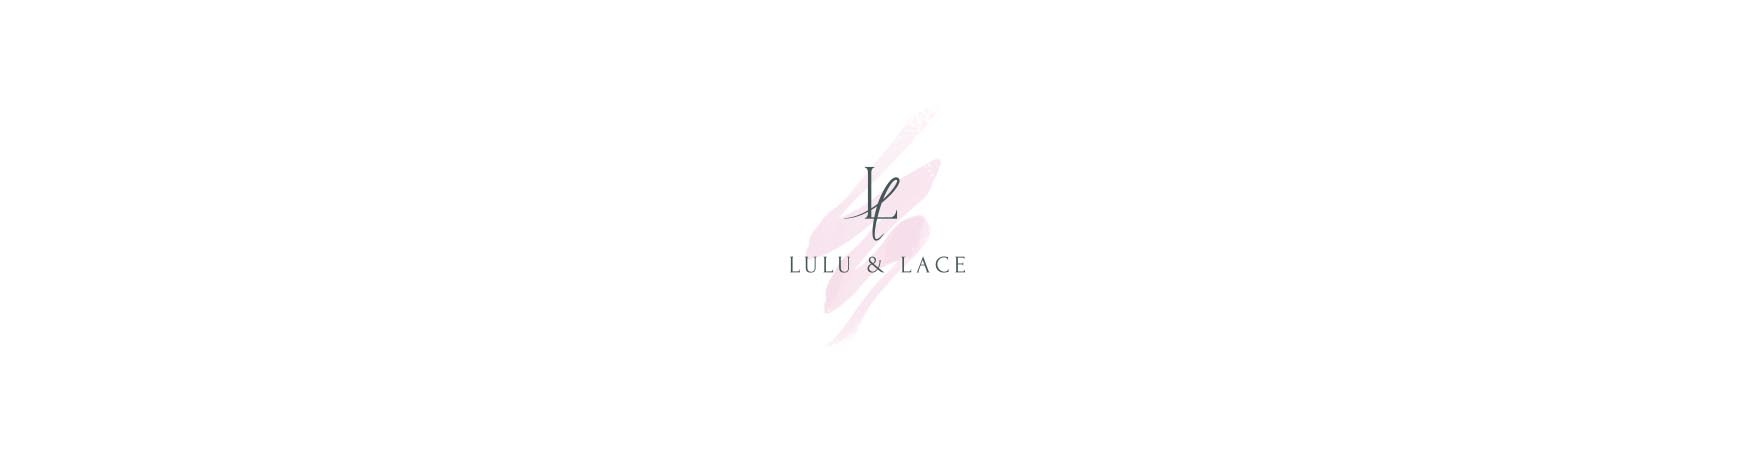 Lulu & Lace